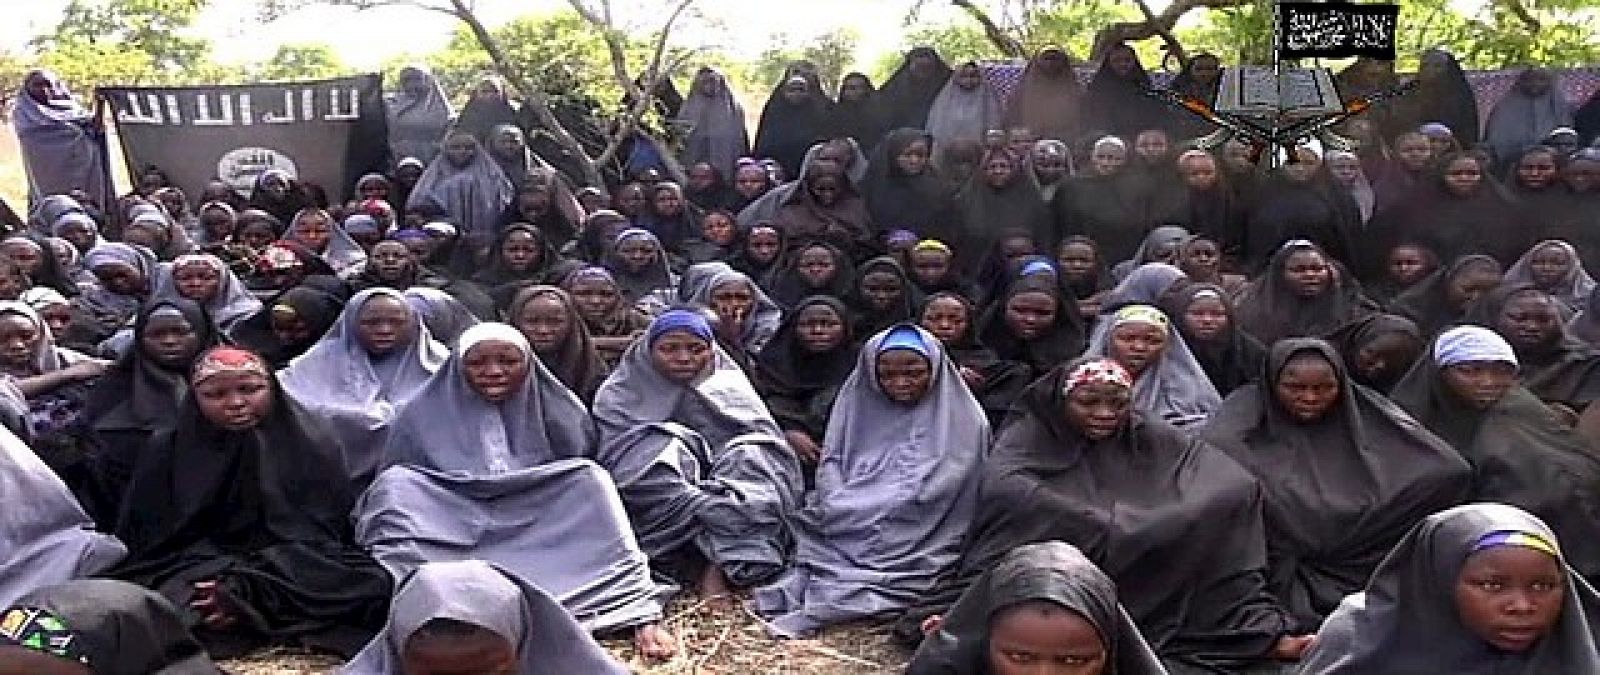 Imagen difundida por el grupo islamista Boko Haram de las 200 niñas secuestradas en Chibok, Nigeria.